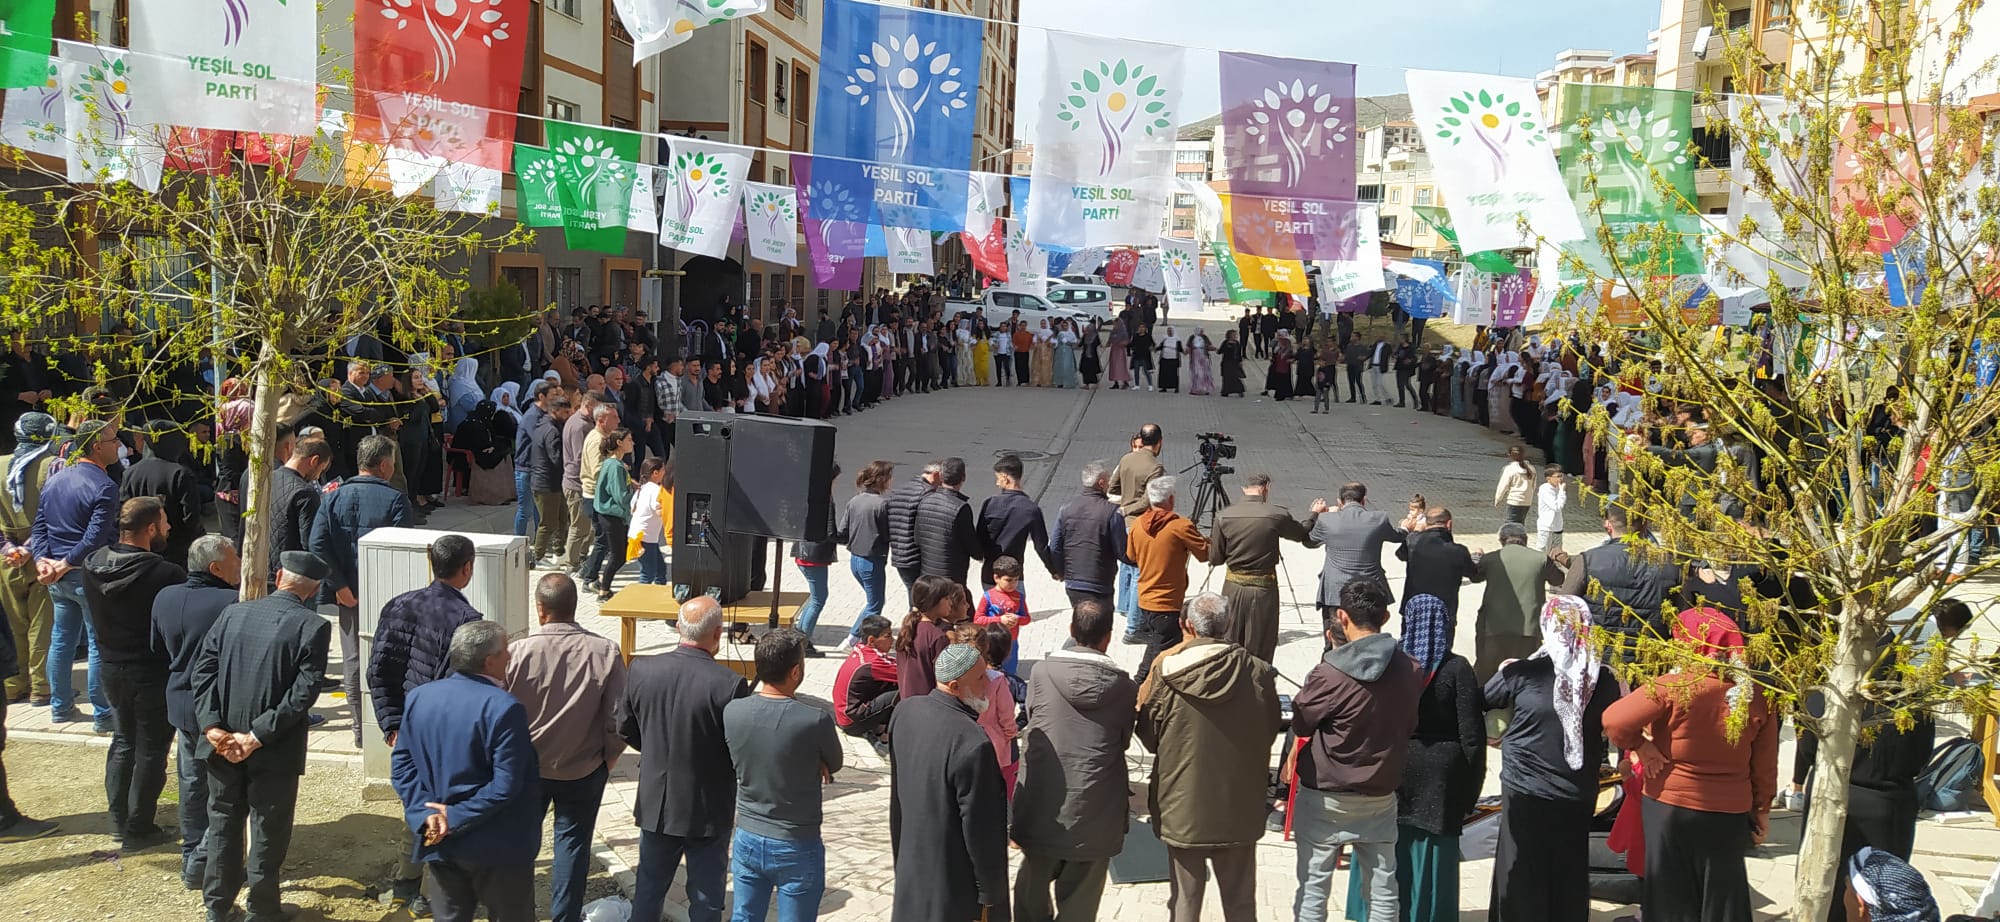 Yeşil Sol Parti, Şırnak'ta Startını Verdi